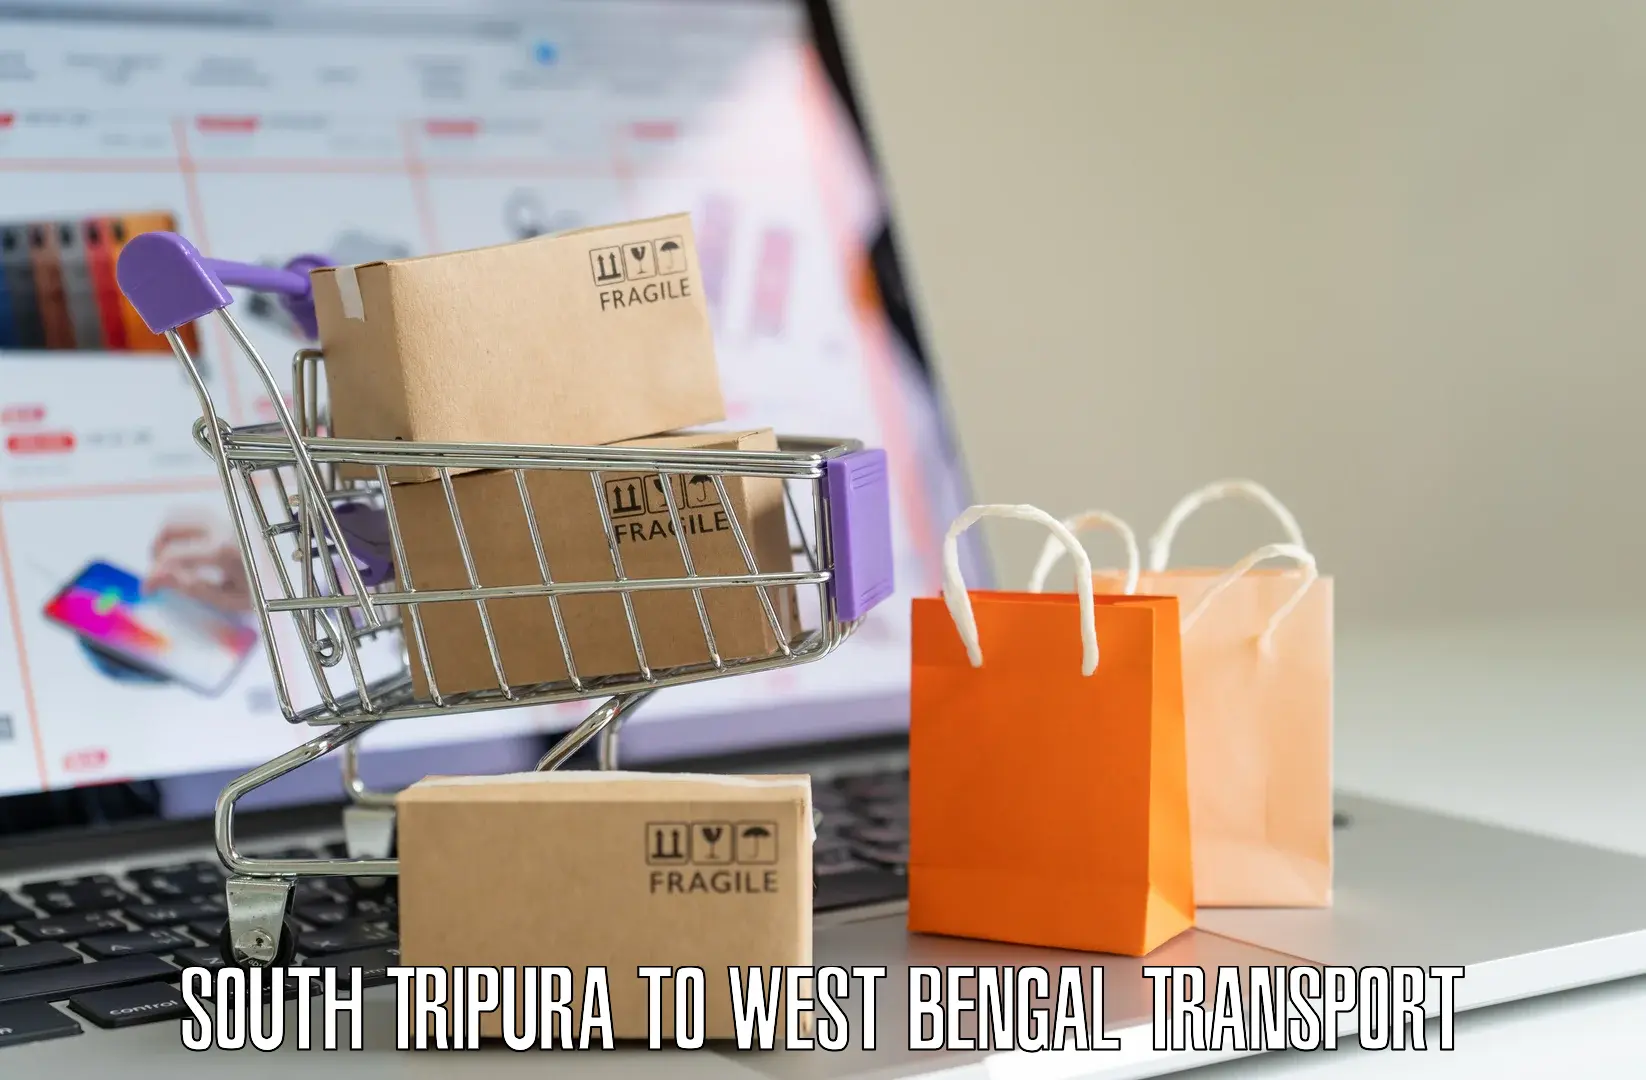 Online transport service South Tripura to Mekhliganj